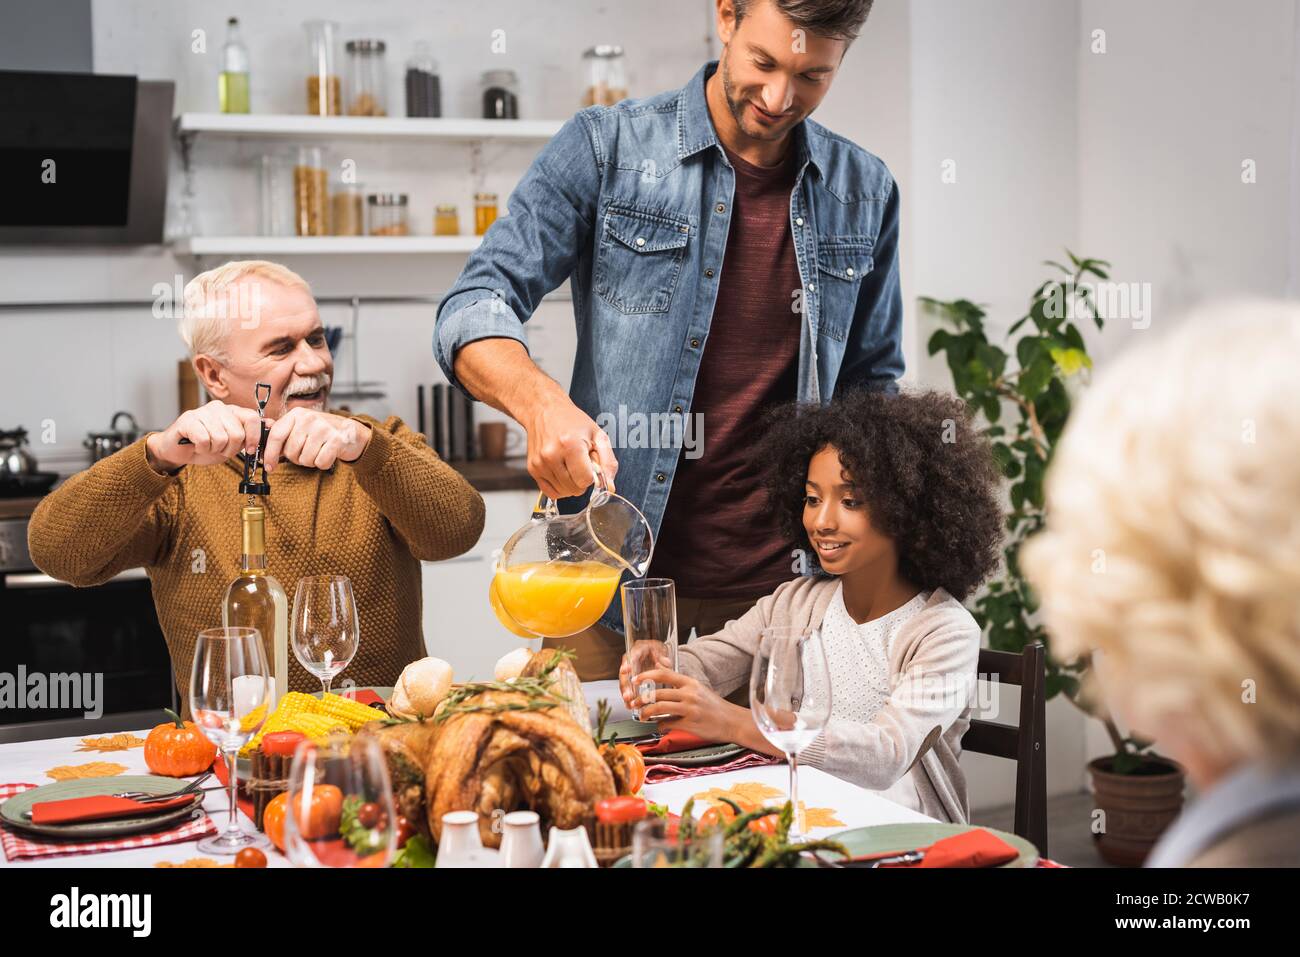 Mann gießt Orangensaft, während Danksagung mit multikultureller Familie feiern Stockfoto